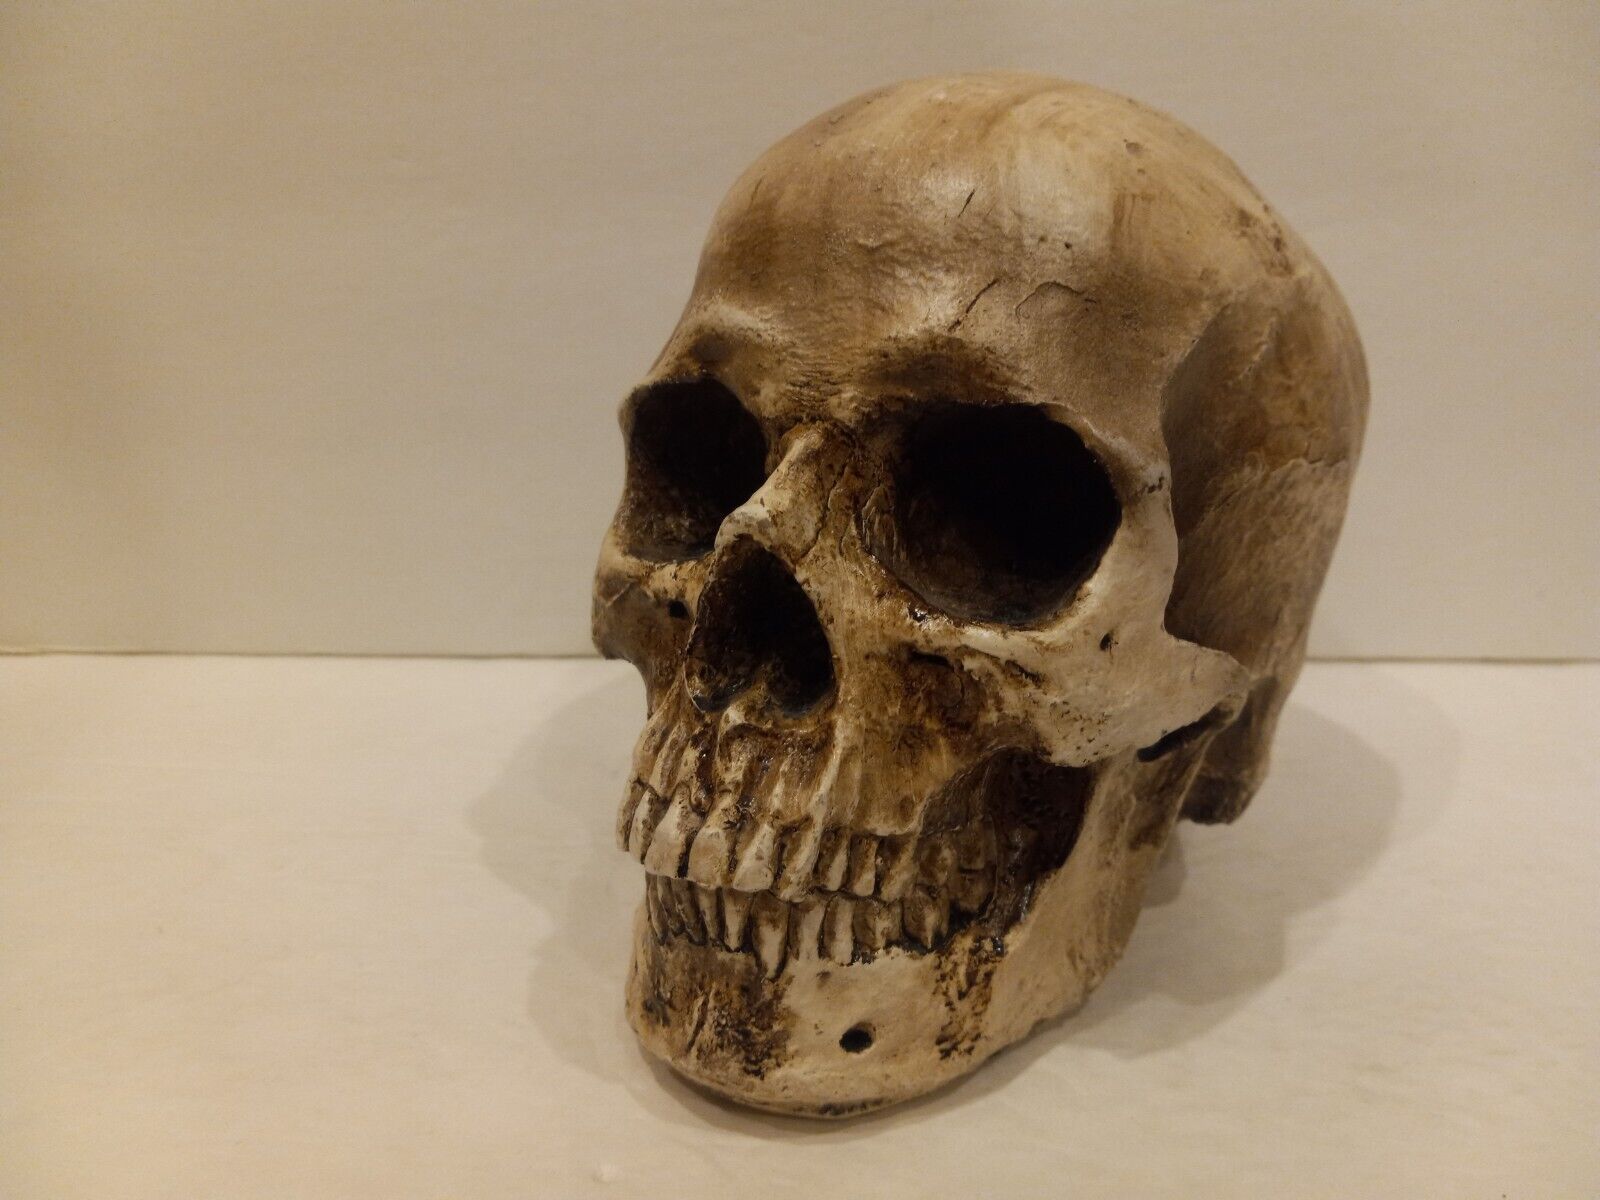 Full size Human horror skull hollow resin halloween horror decor